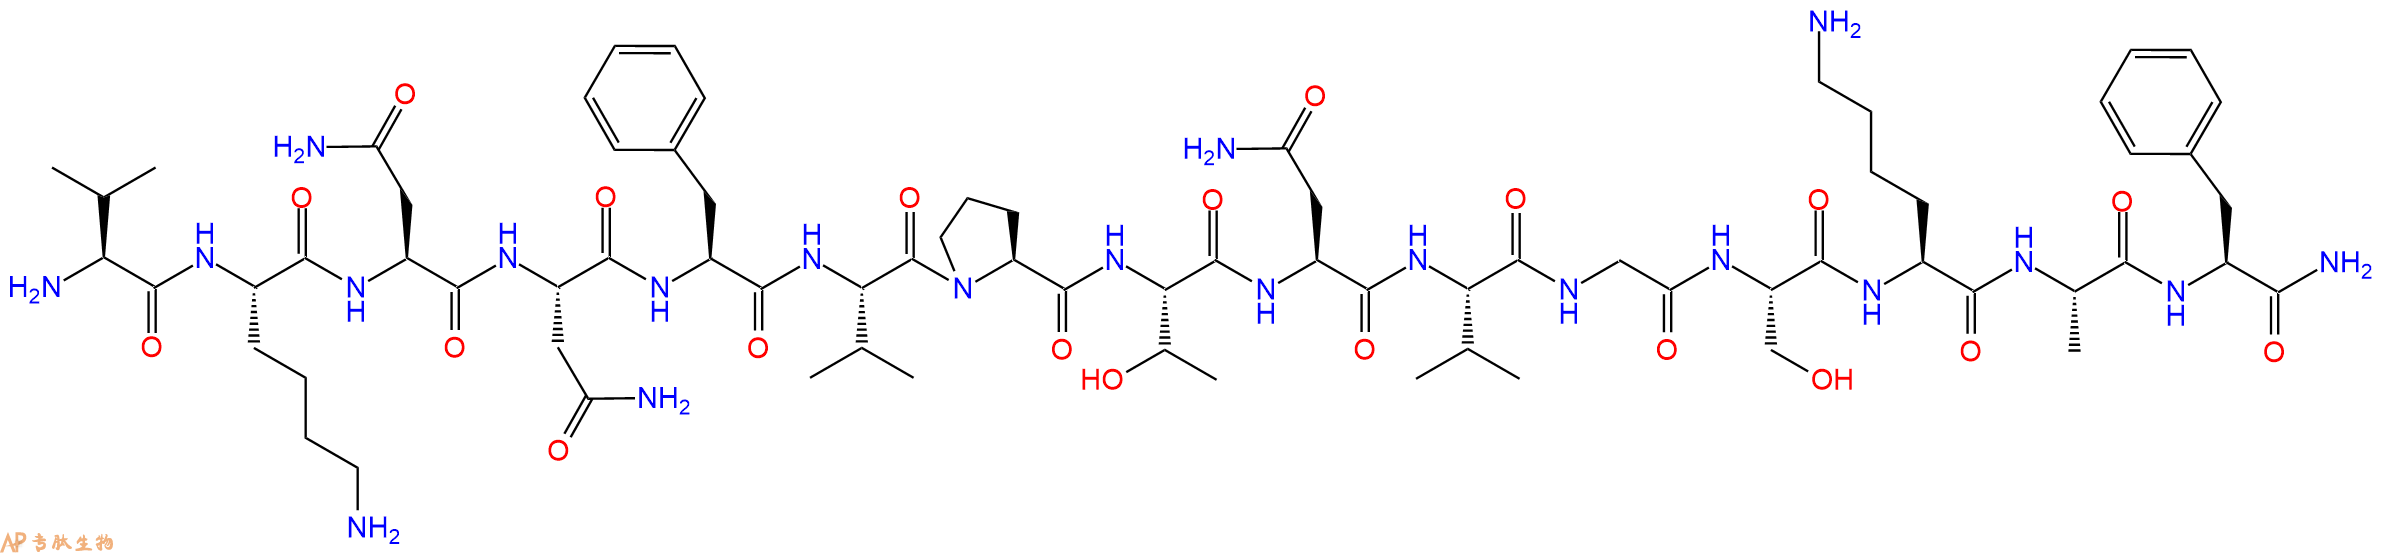 专肽生物产品降钙素α-CGRP (19-37) (human)145459-33-2